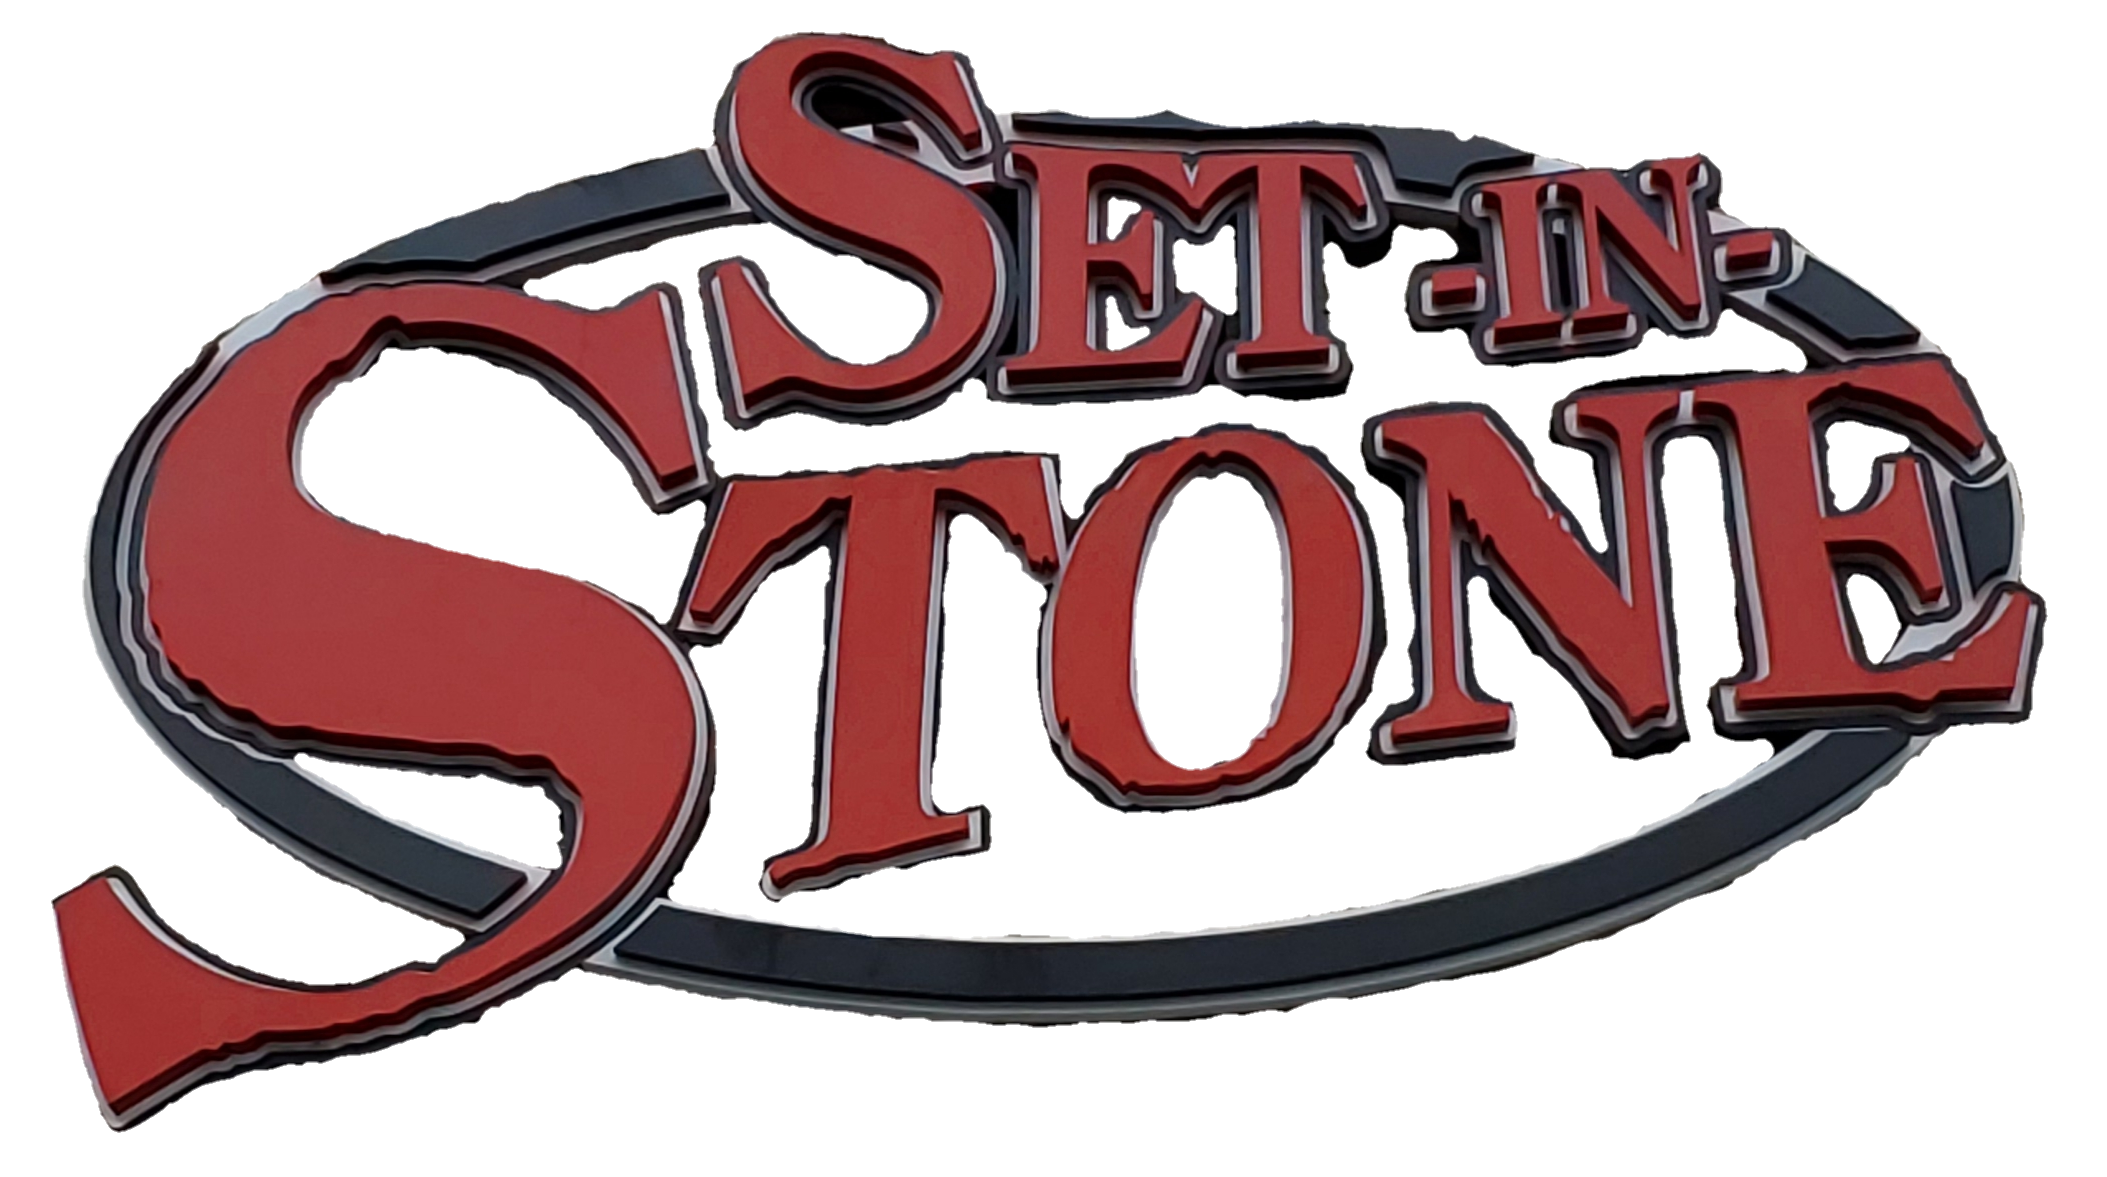 set_in_stone_valdosta_logo